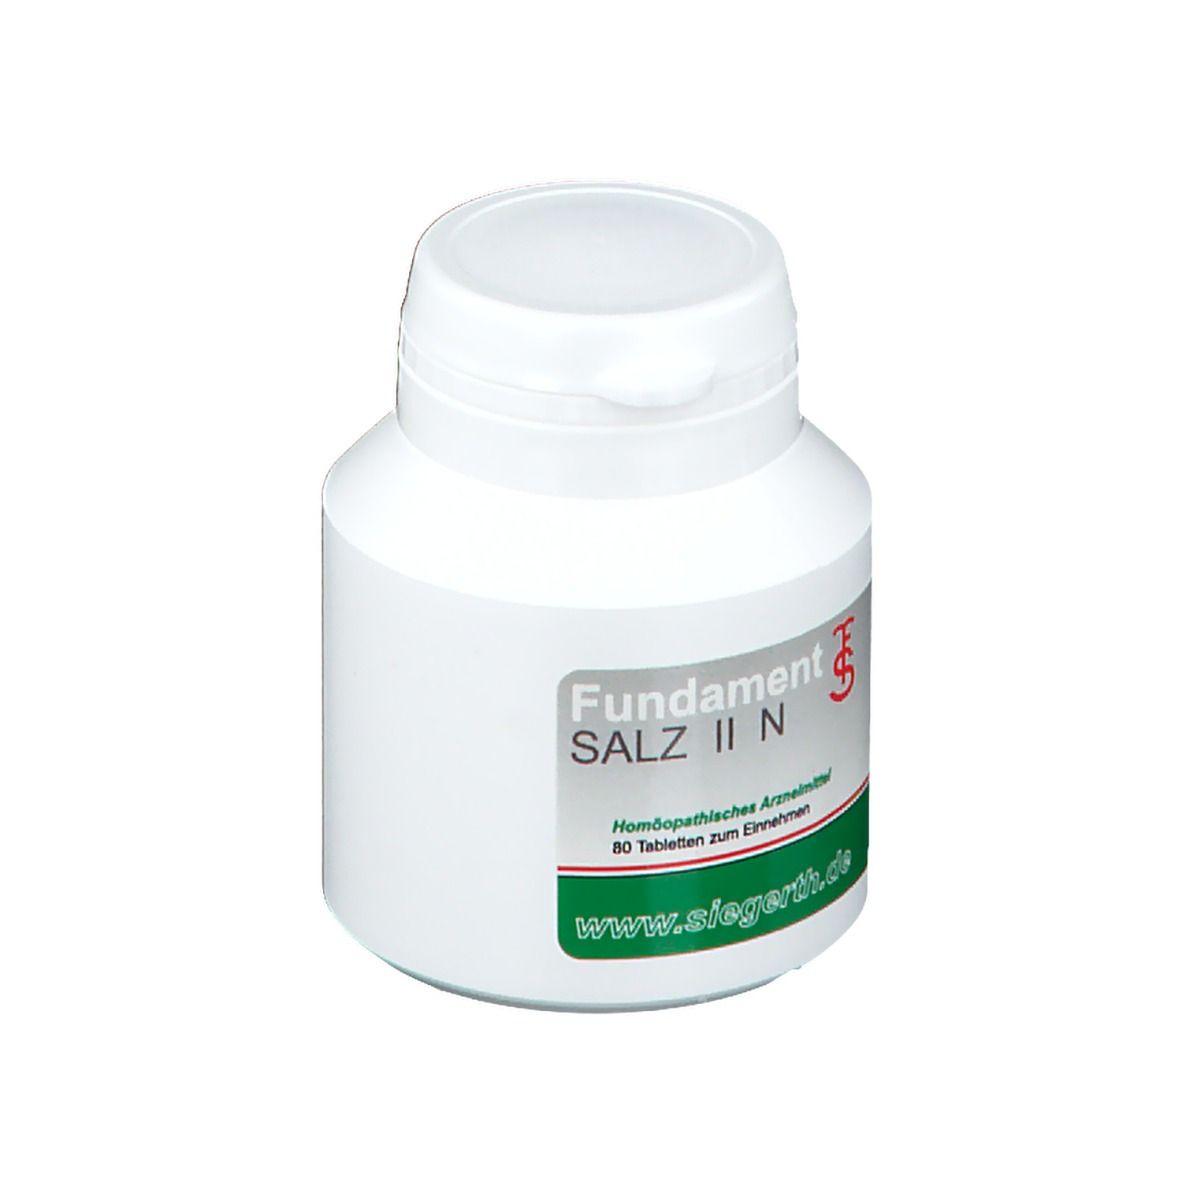 FUNDAMENT Salz II N Tabletten